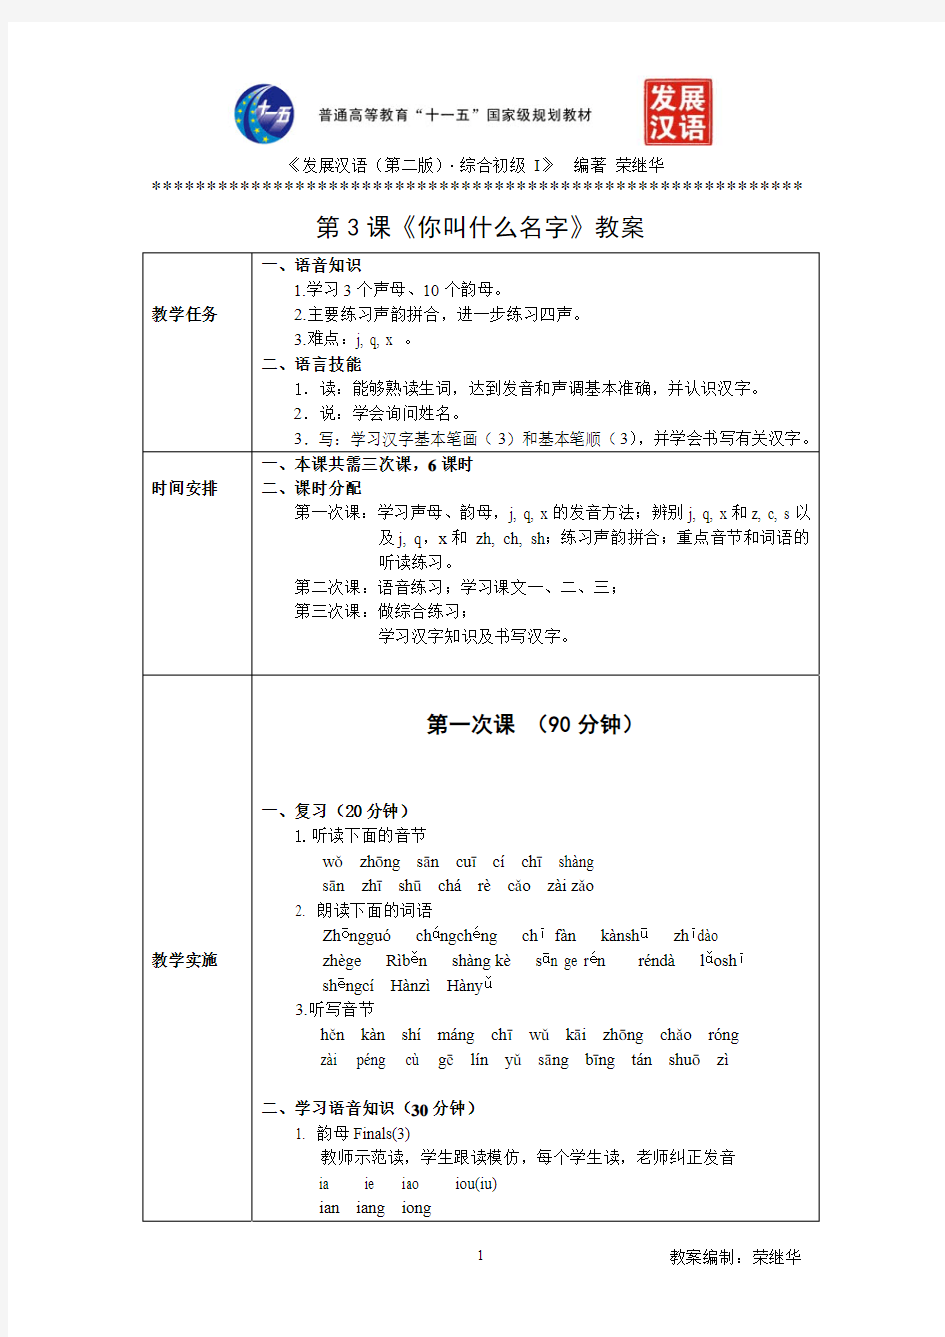 发展汉语初级综合1：第3课教案